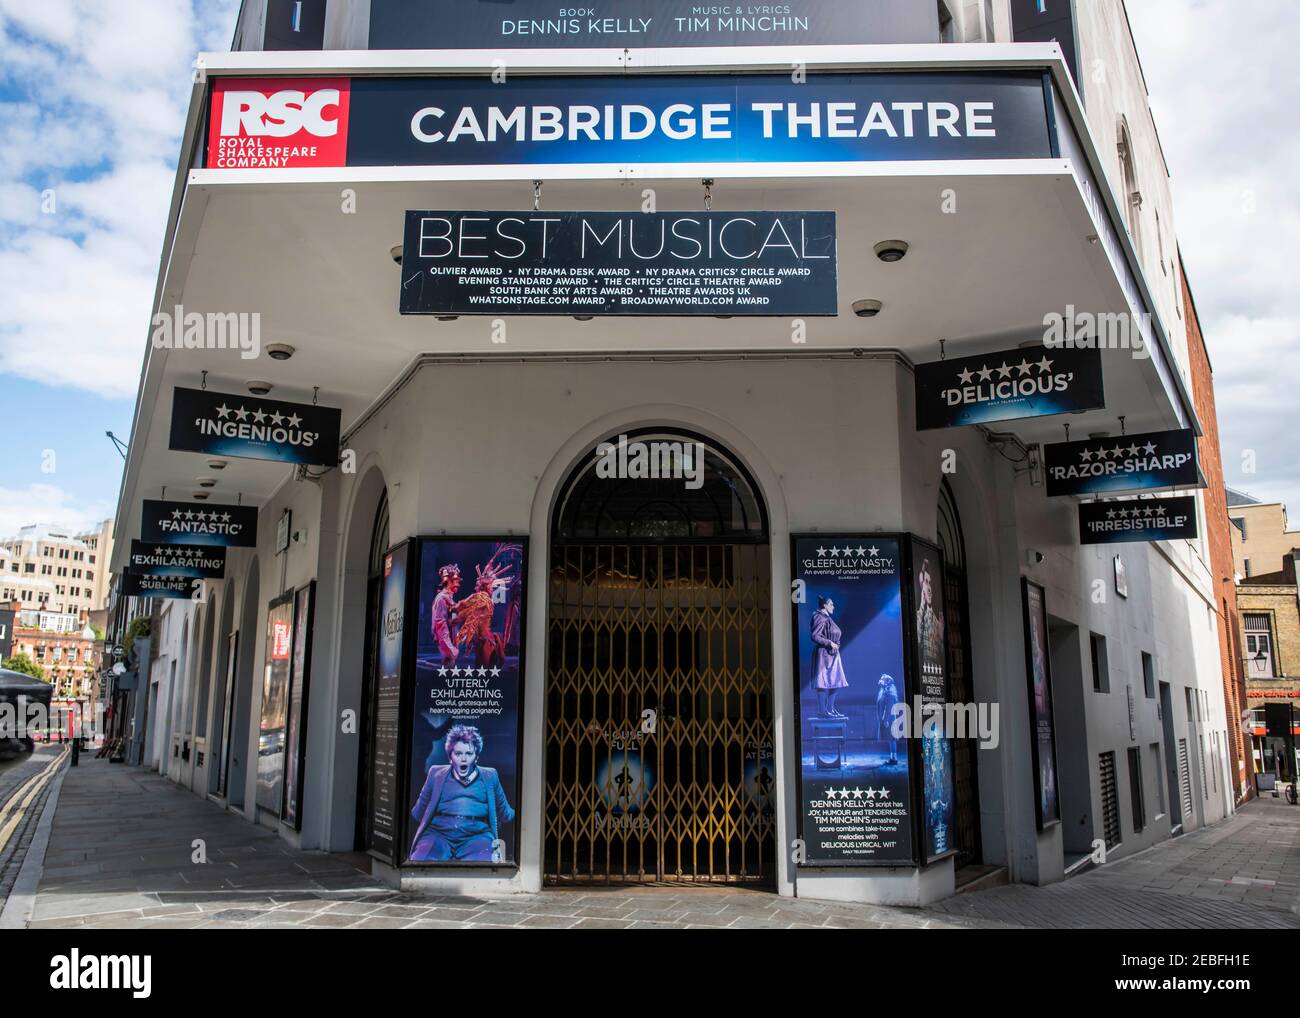 Das Cambridge Theatre, die Heimat von Roald Dahls Matilda, die wegen der Covid-19 Pandemie geschlossen ist, und wahrscheinlich bald eröffnet wird, es sei denn, die Regierungsrichtlinien ändern sich, Seven Dials, London. Stockfoto